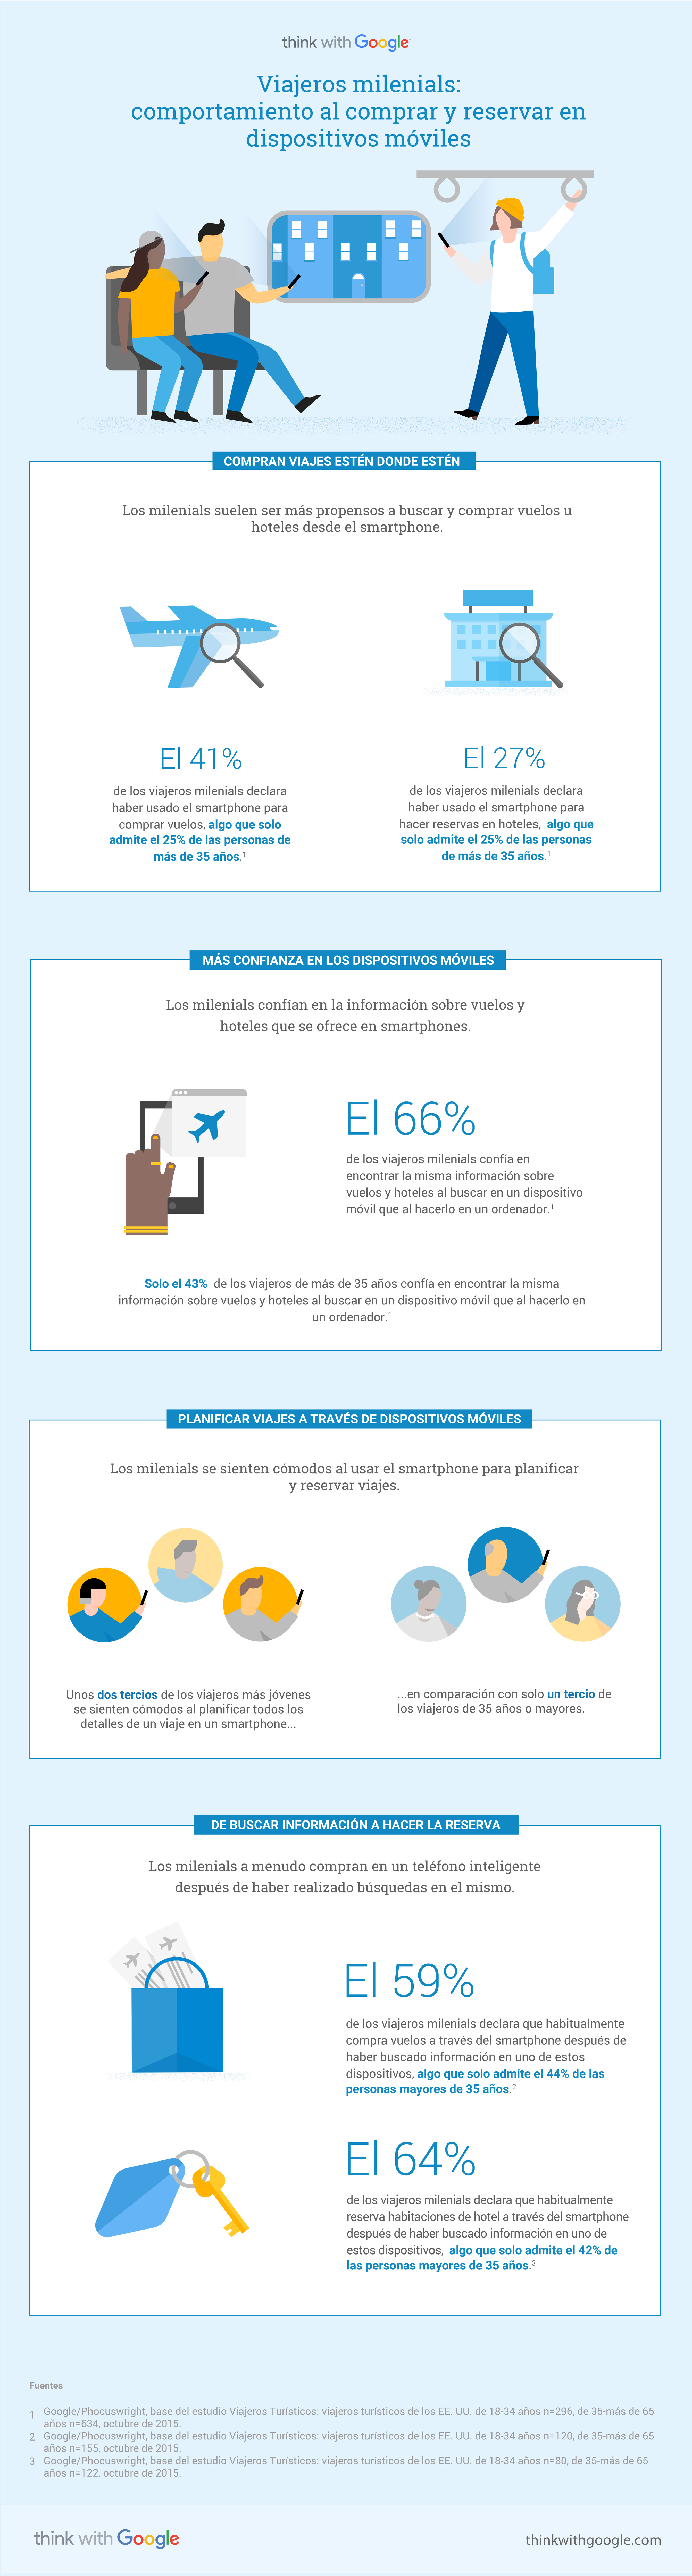 ES millennial travelers mobile shopping booking behavior infografía